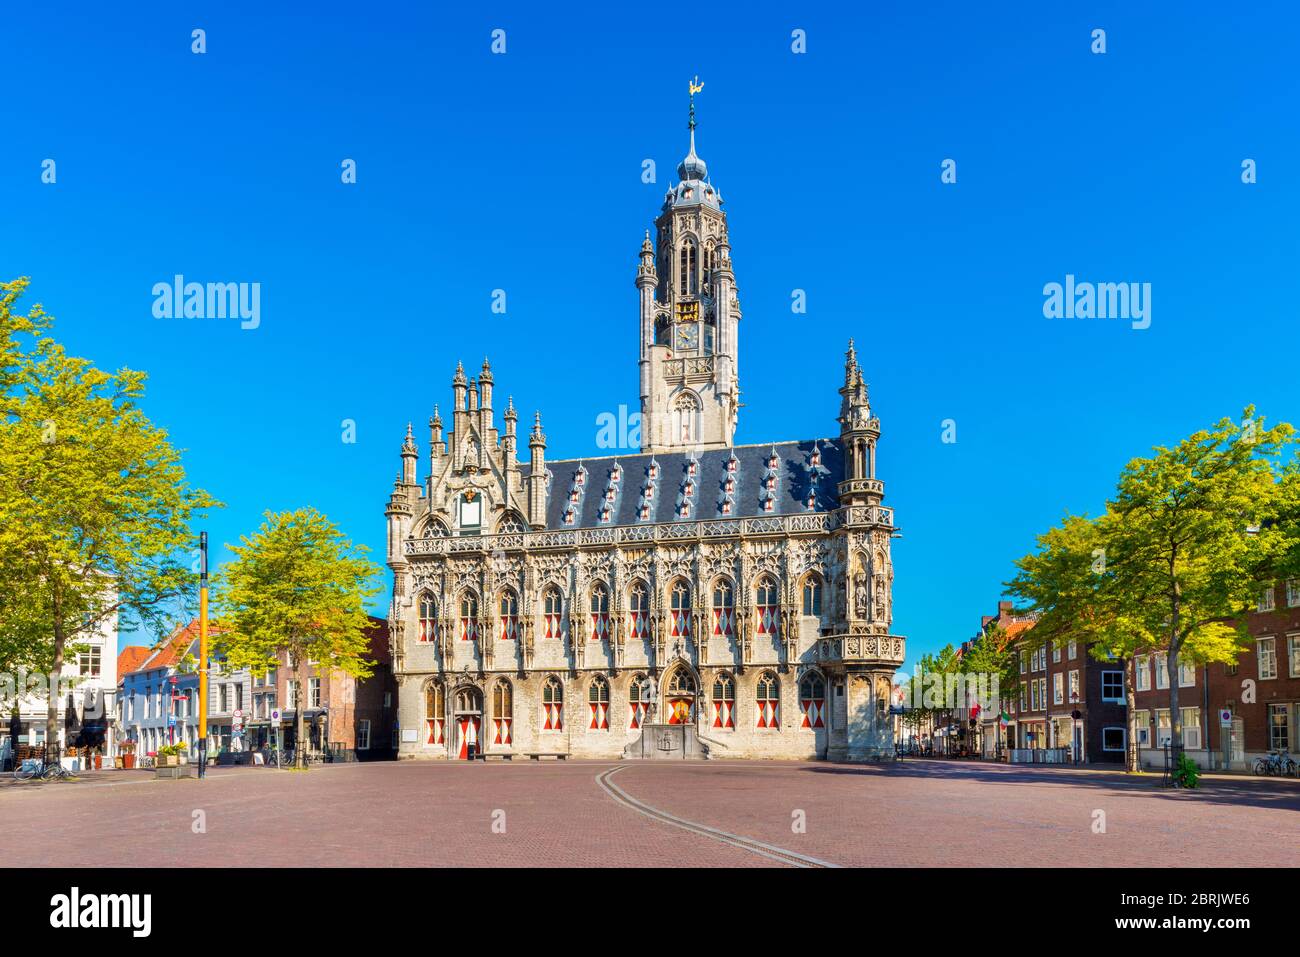 Rathaus von Middelburg, Zeeland Provinz, Niederlande. Das spätgotische Gebäude wurde 1520 fertiggestellt. Middelburg ist die Hauptstadt von Zeeland. Stockfoto